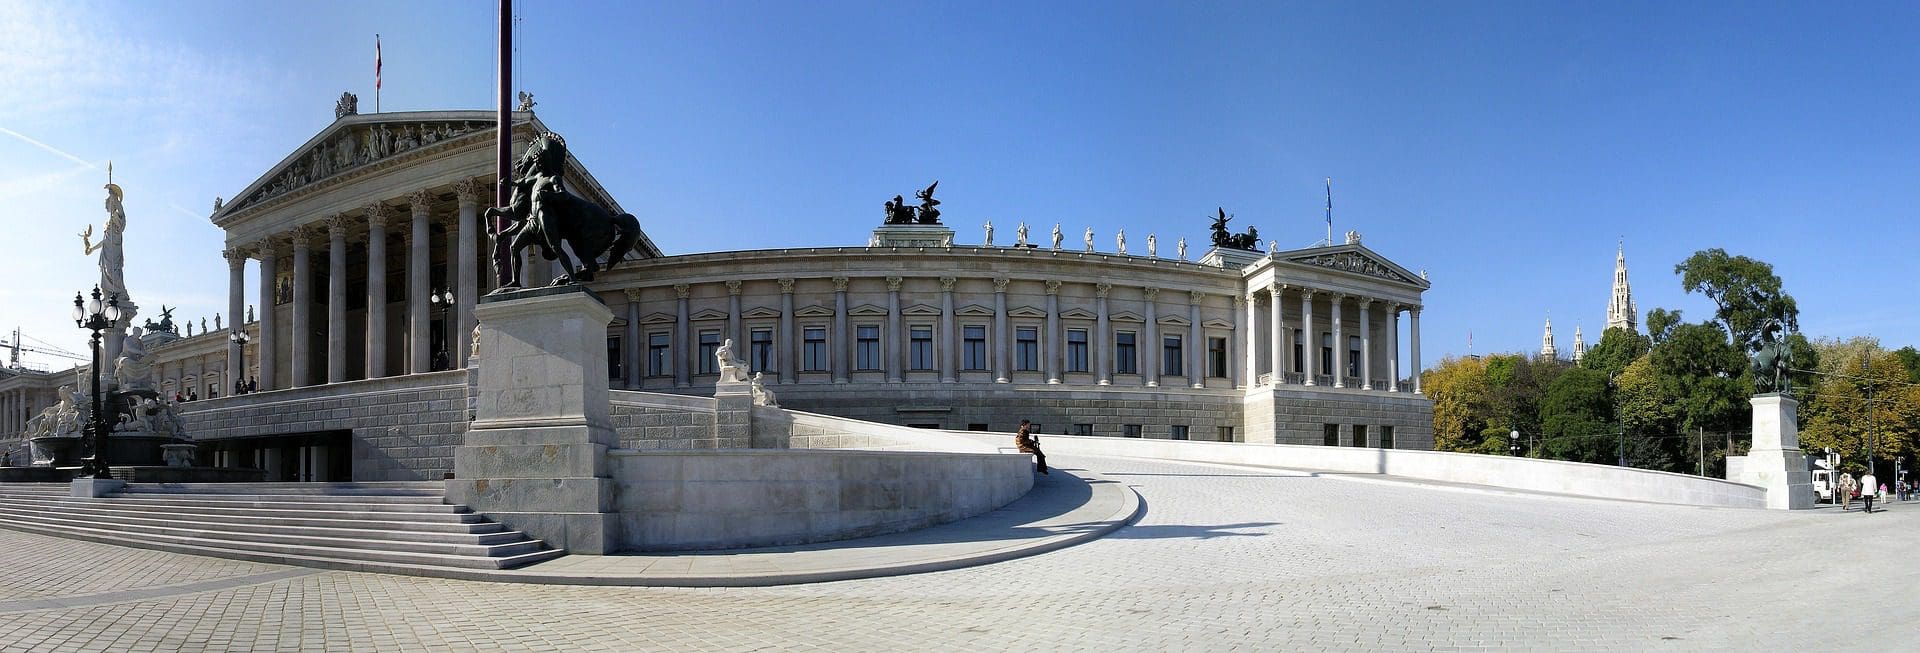 Bâtiment du Parlement à Vienne